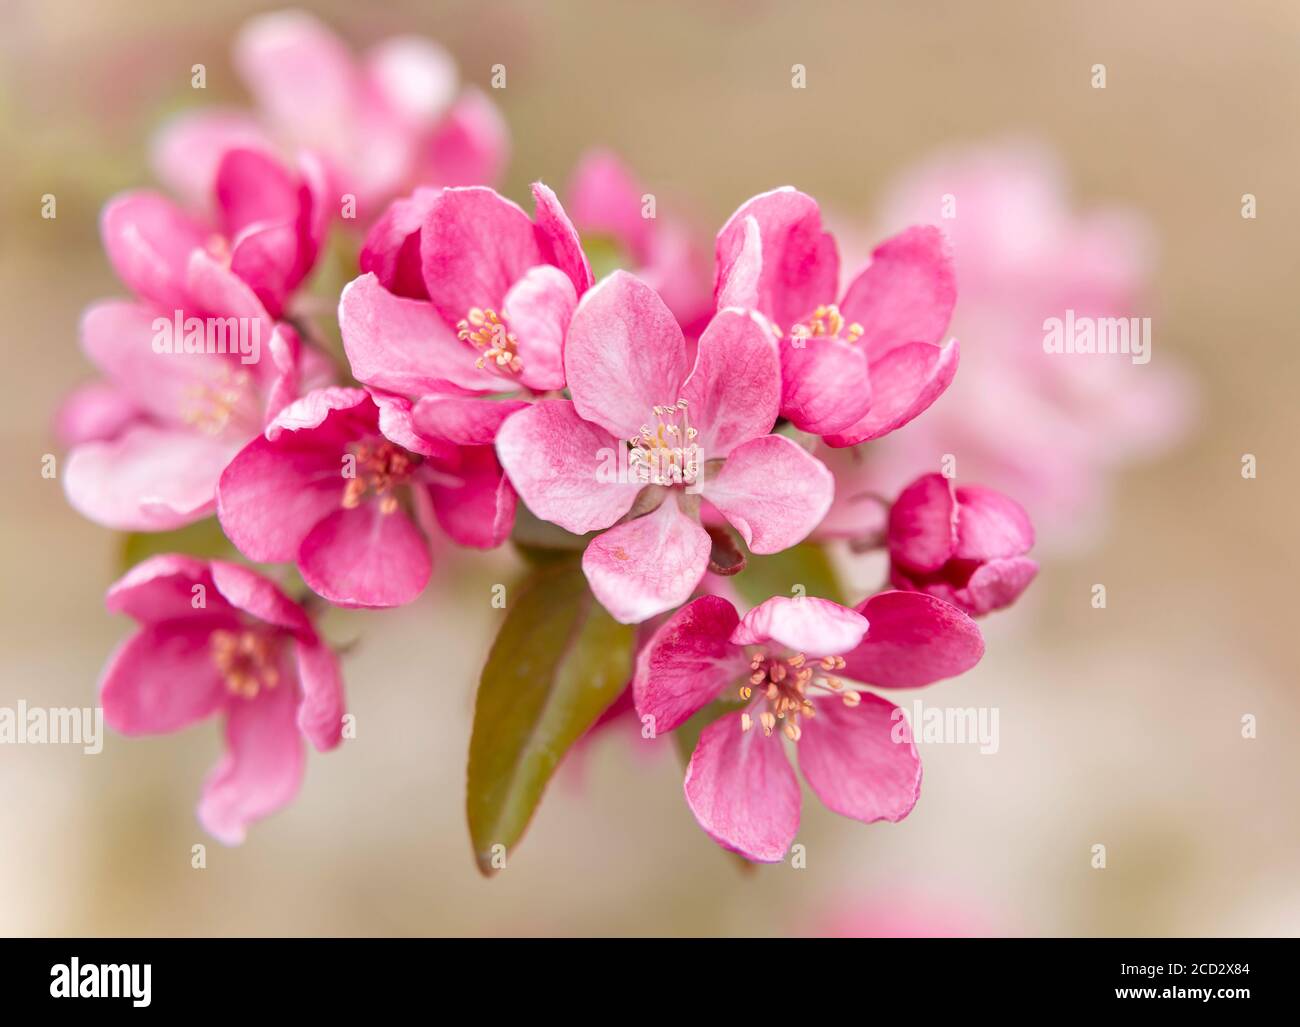 Background of flowers of an apple-tree of Nedzvetsky (Malus niedzwetzkyana Dieck) Stock Photo